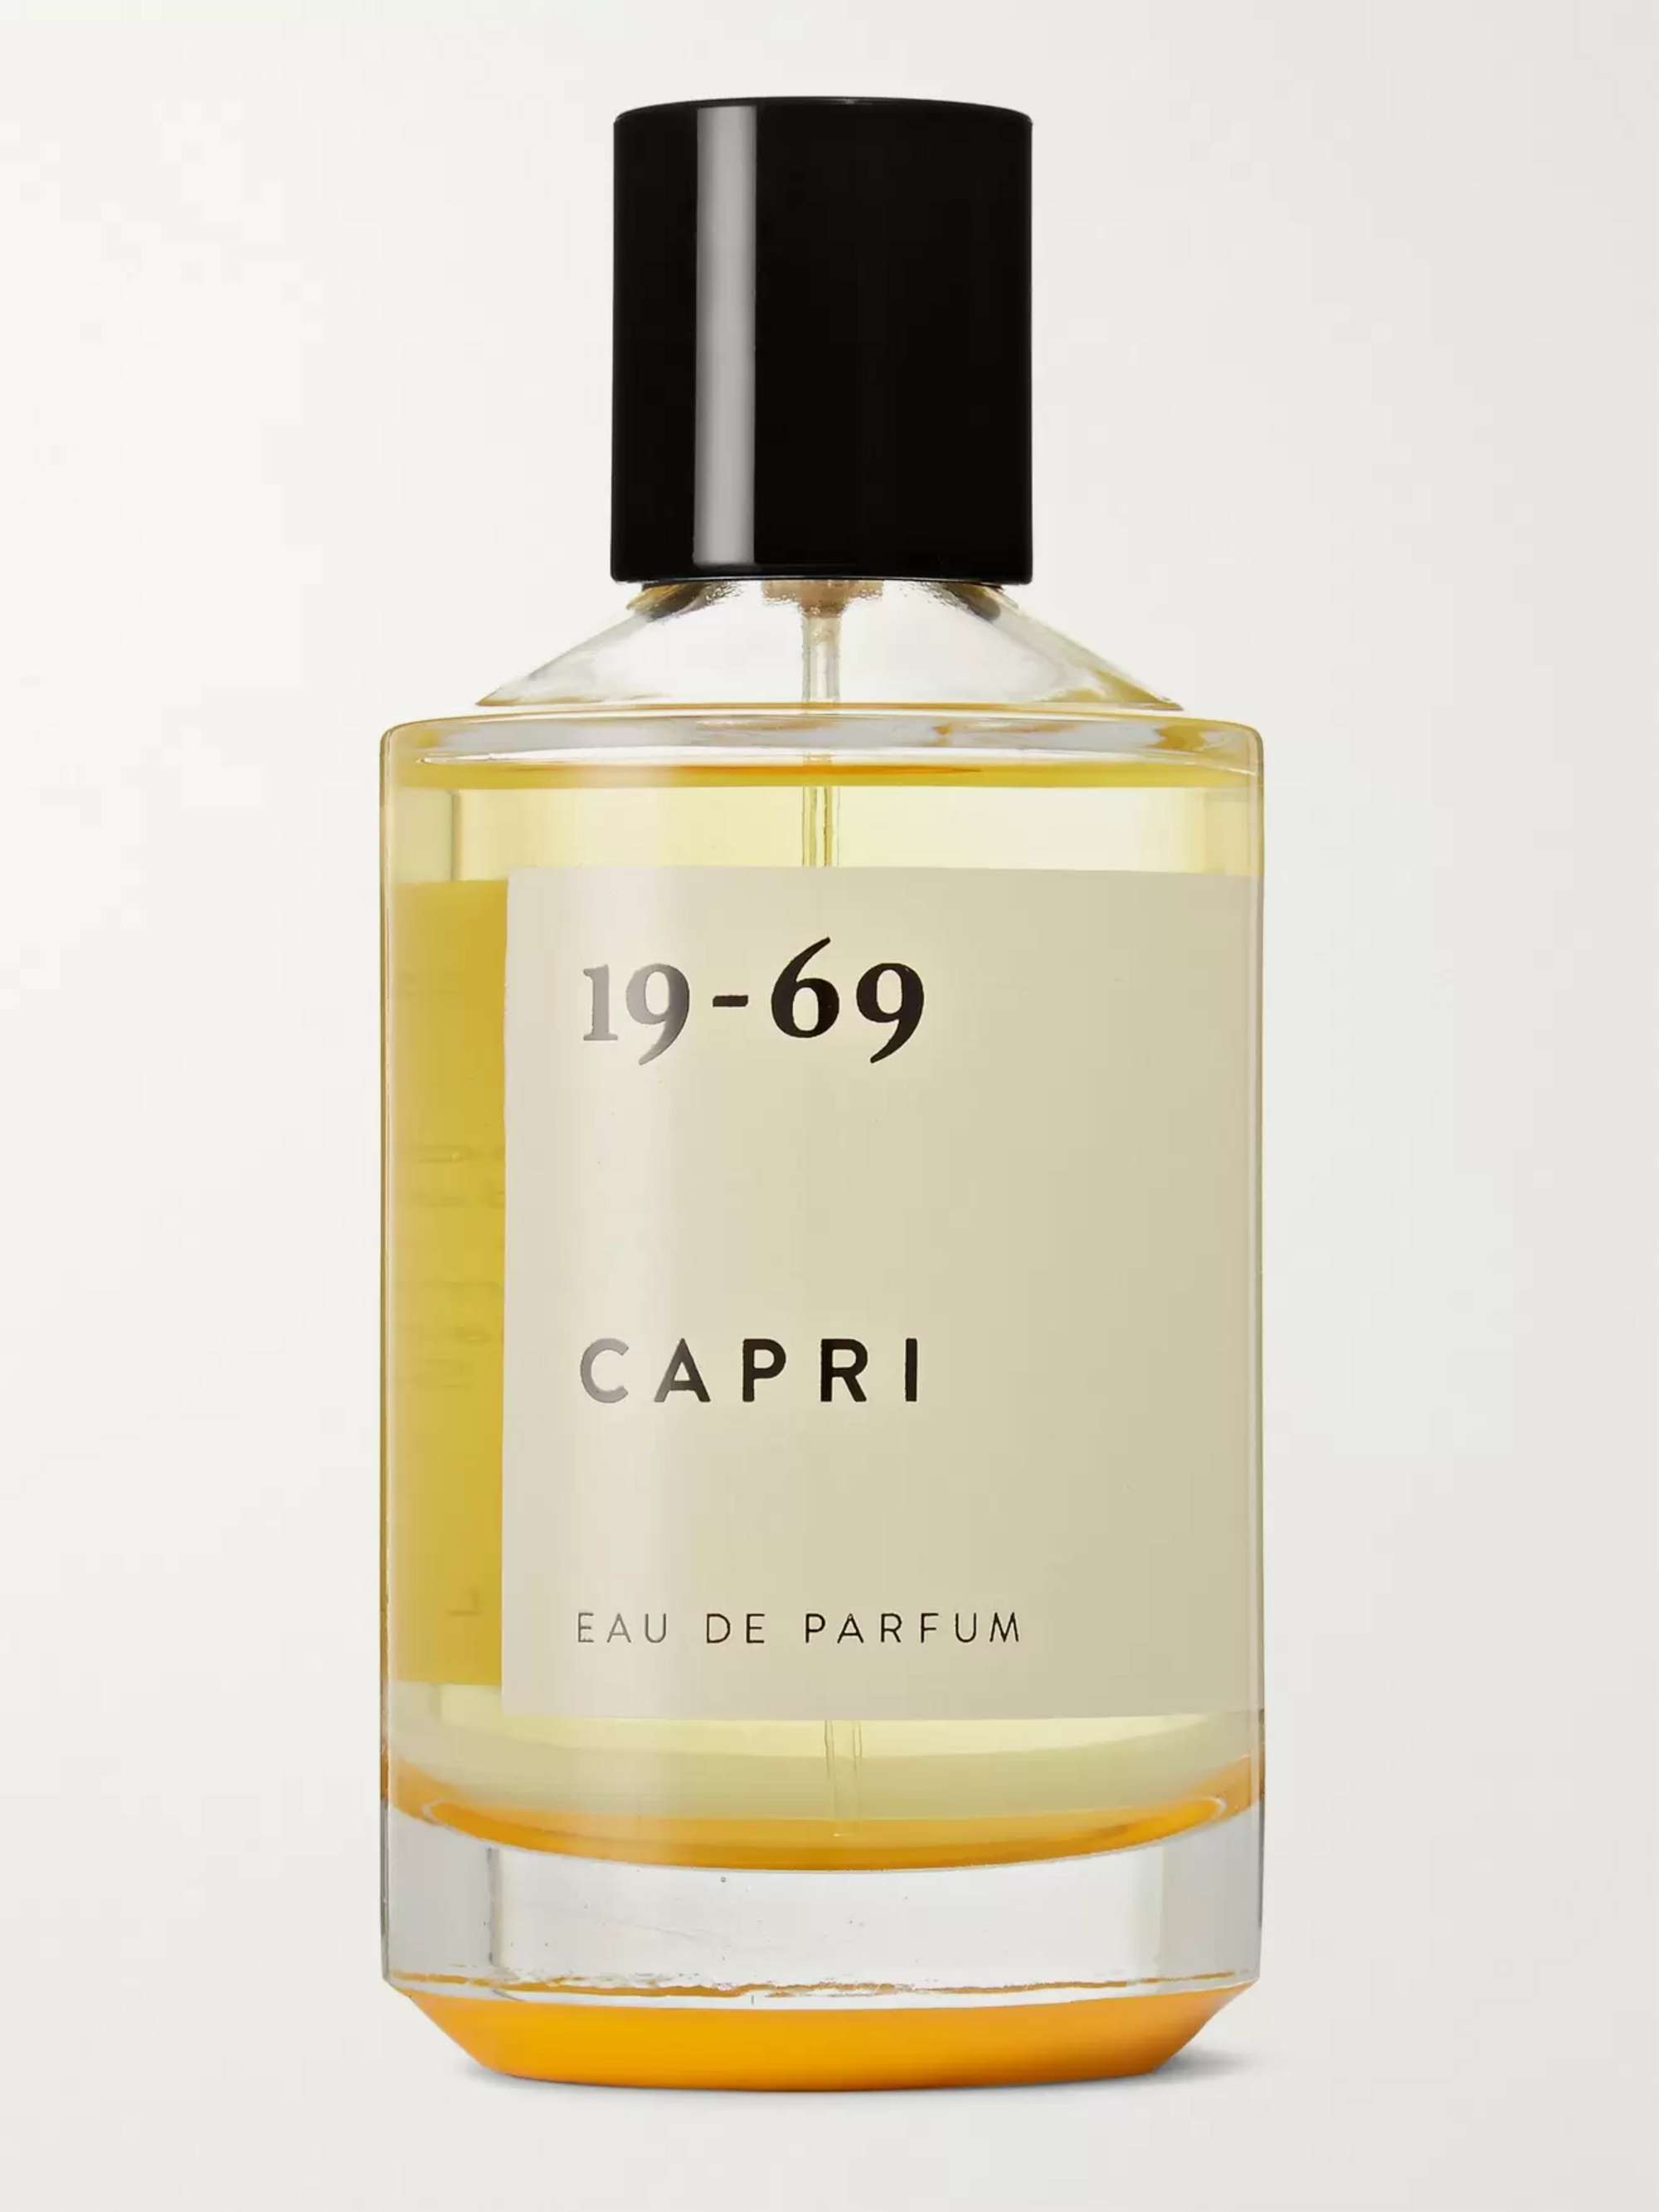 19-69 Capri Eau de Parfum, 100ml